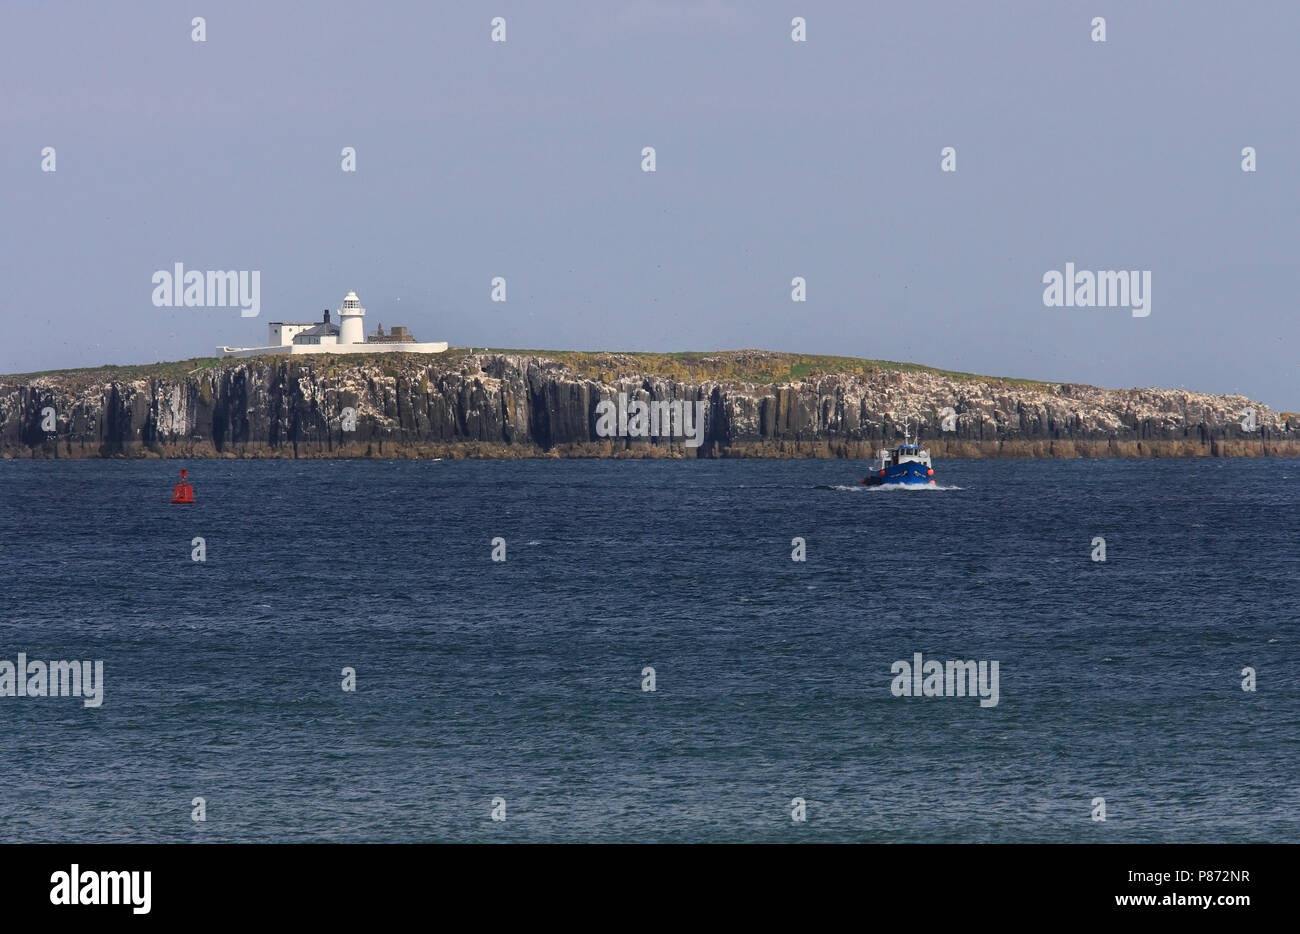 De Farne Islands liggen voor de Oostkust van Engeland. Stock Photo